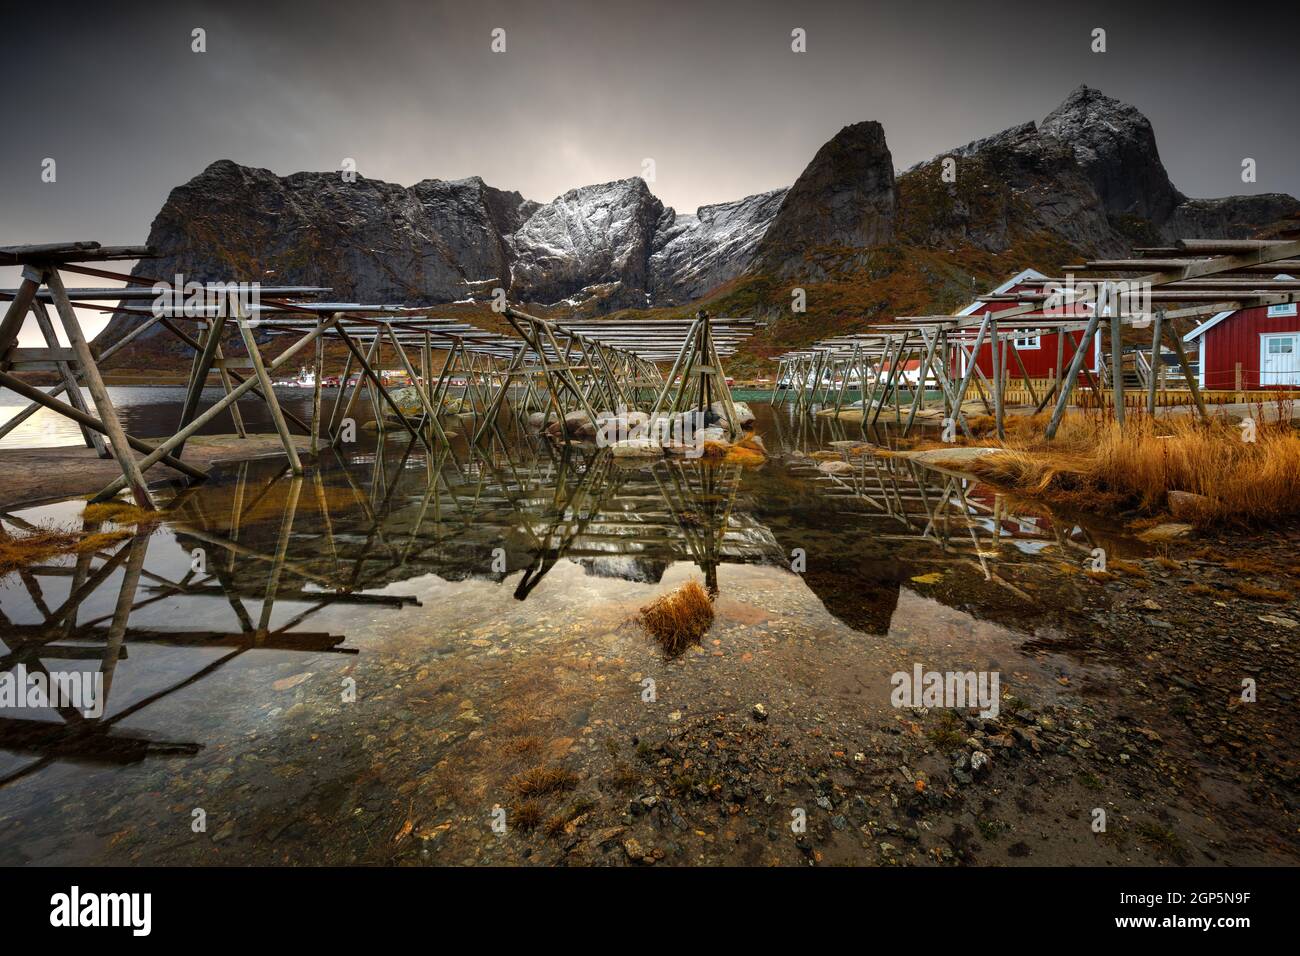 Landschaft eines Fischerdorfes in Norwegen. Konstruktion für das Trocknen von Fischen am Ufer. Traditionelle Arbeit in norwegischen Landschaften. Stockfoto